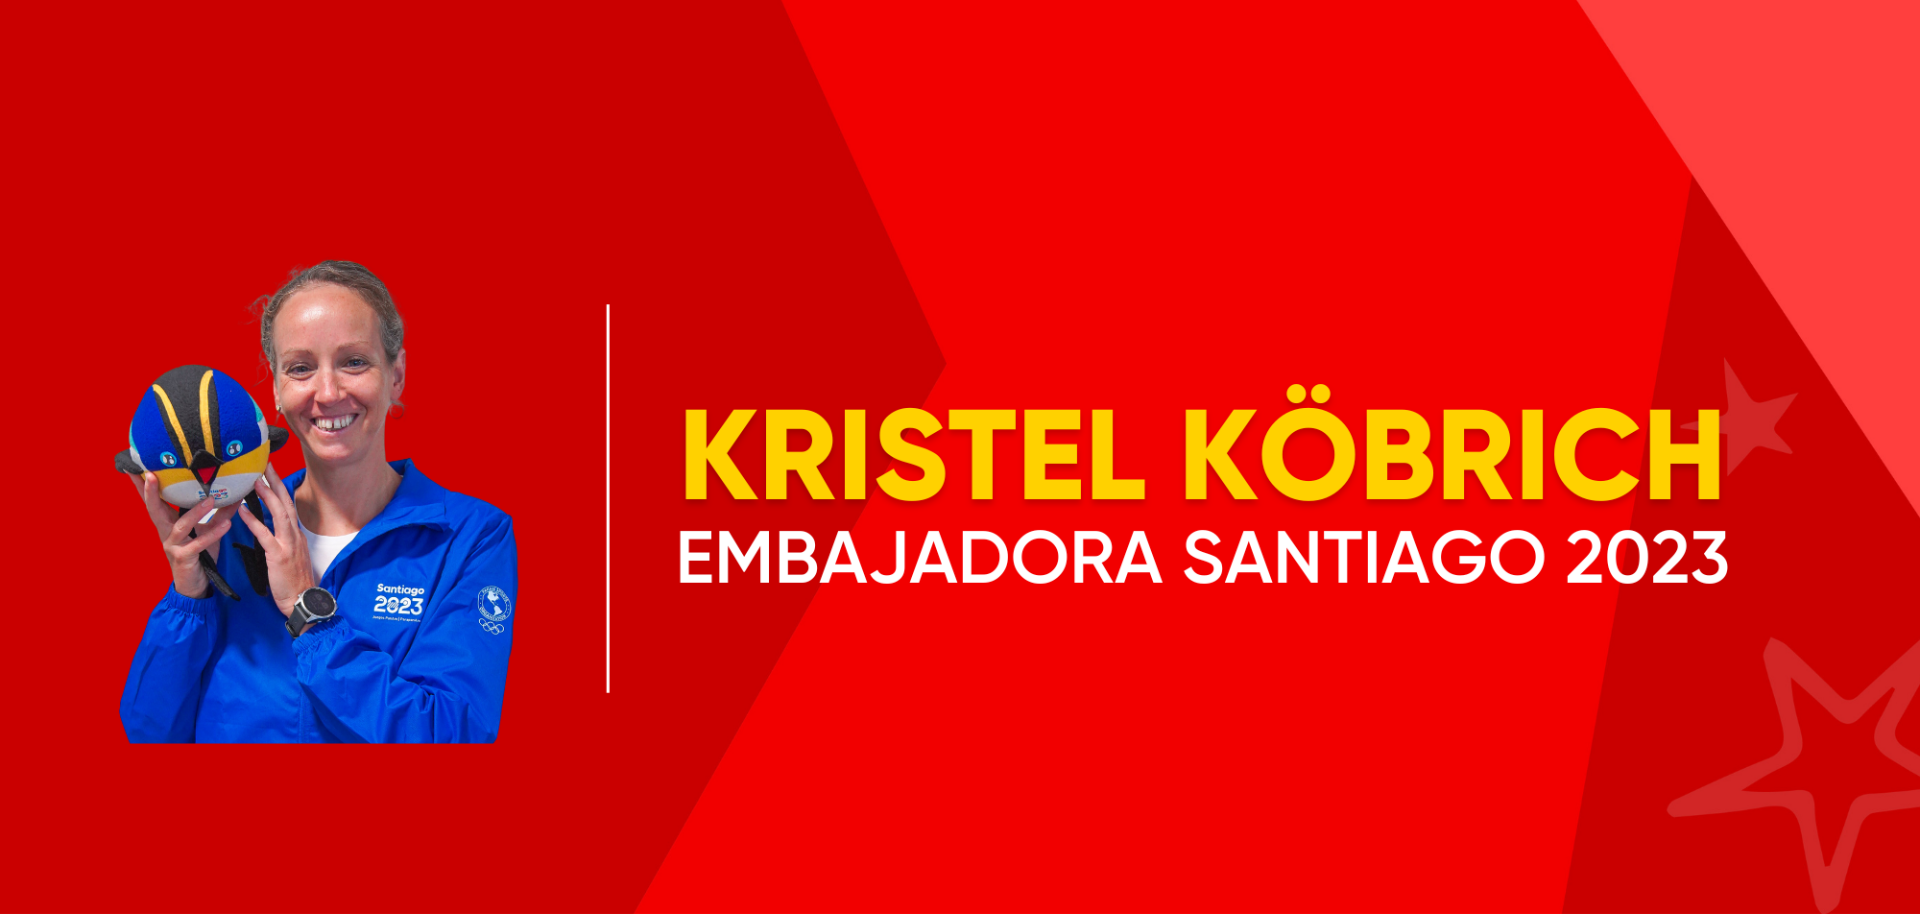 Kristel Köbrich se unió al equipo de embajadores. (Foto: Santiago 2023).